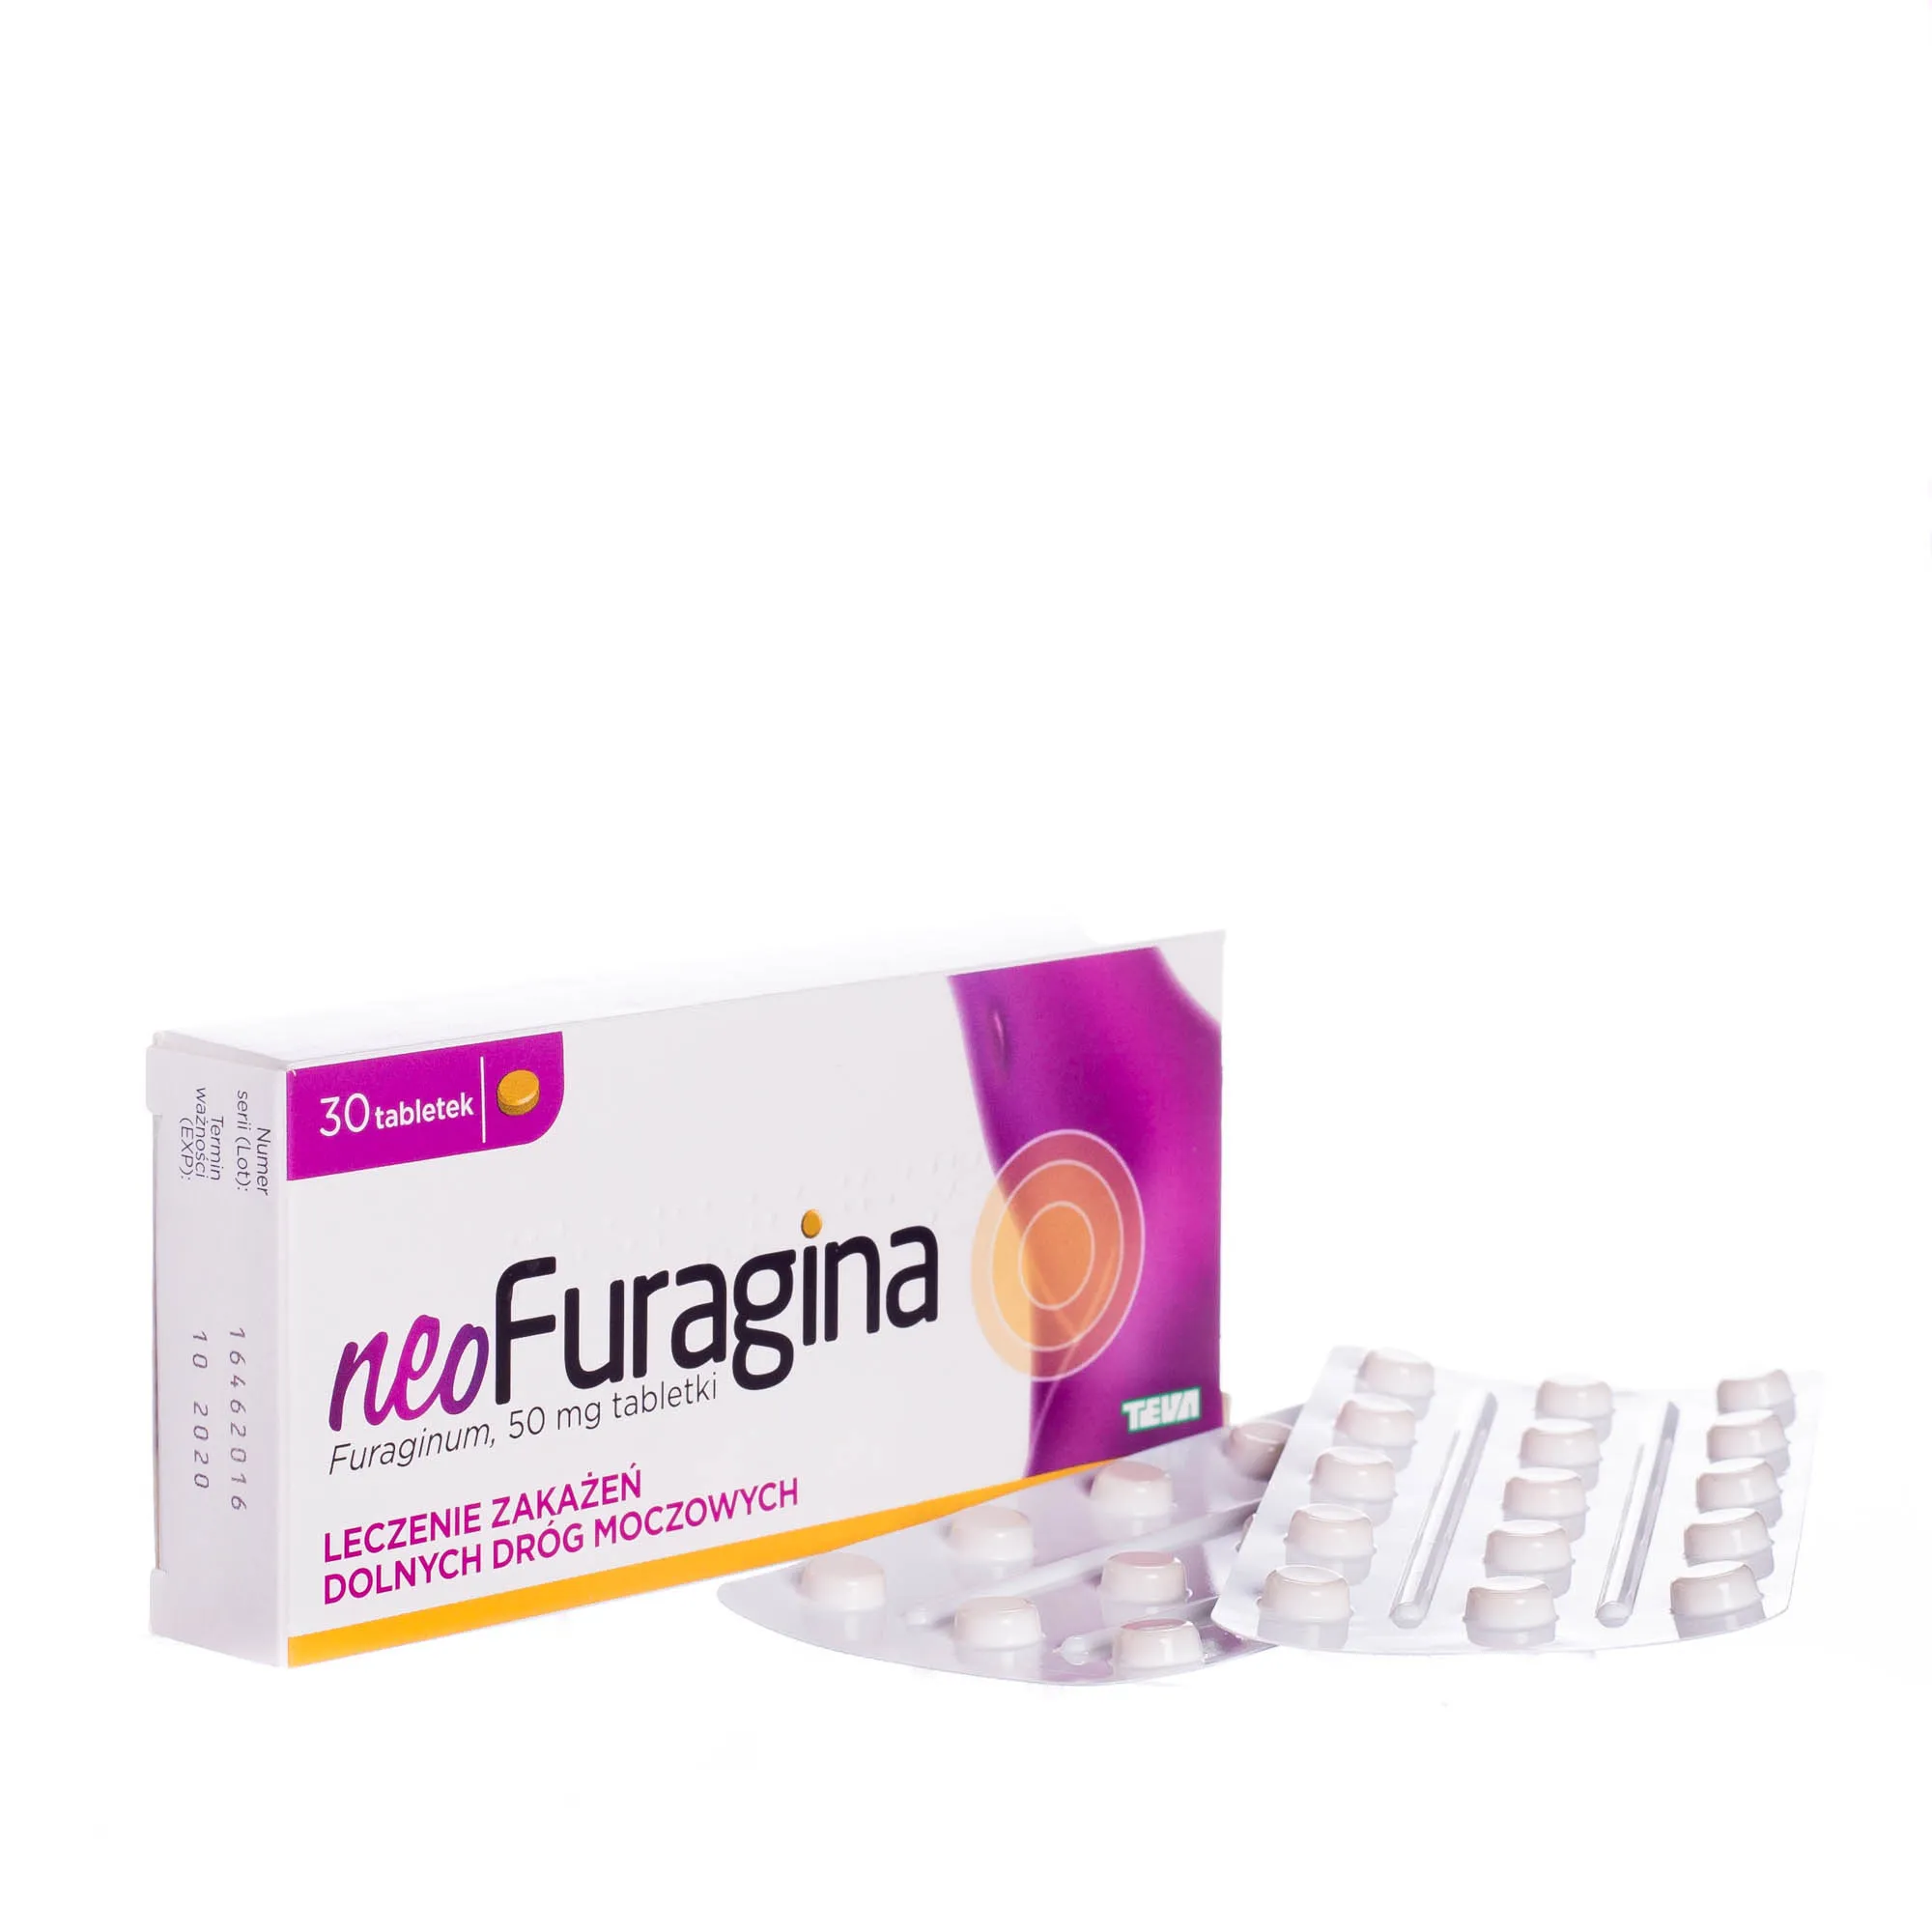 NeoFuragina - lek stosowany w leczeniu zakażeń dolnych dróg moczowych, 30 tabletek